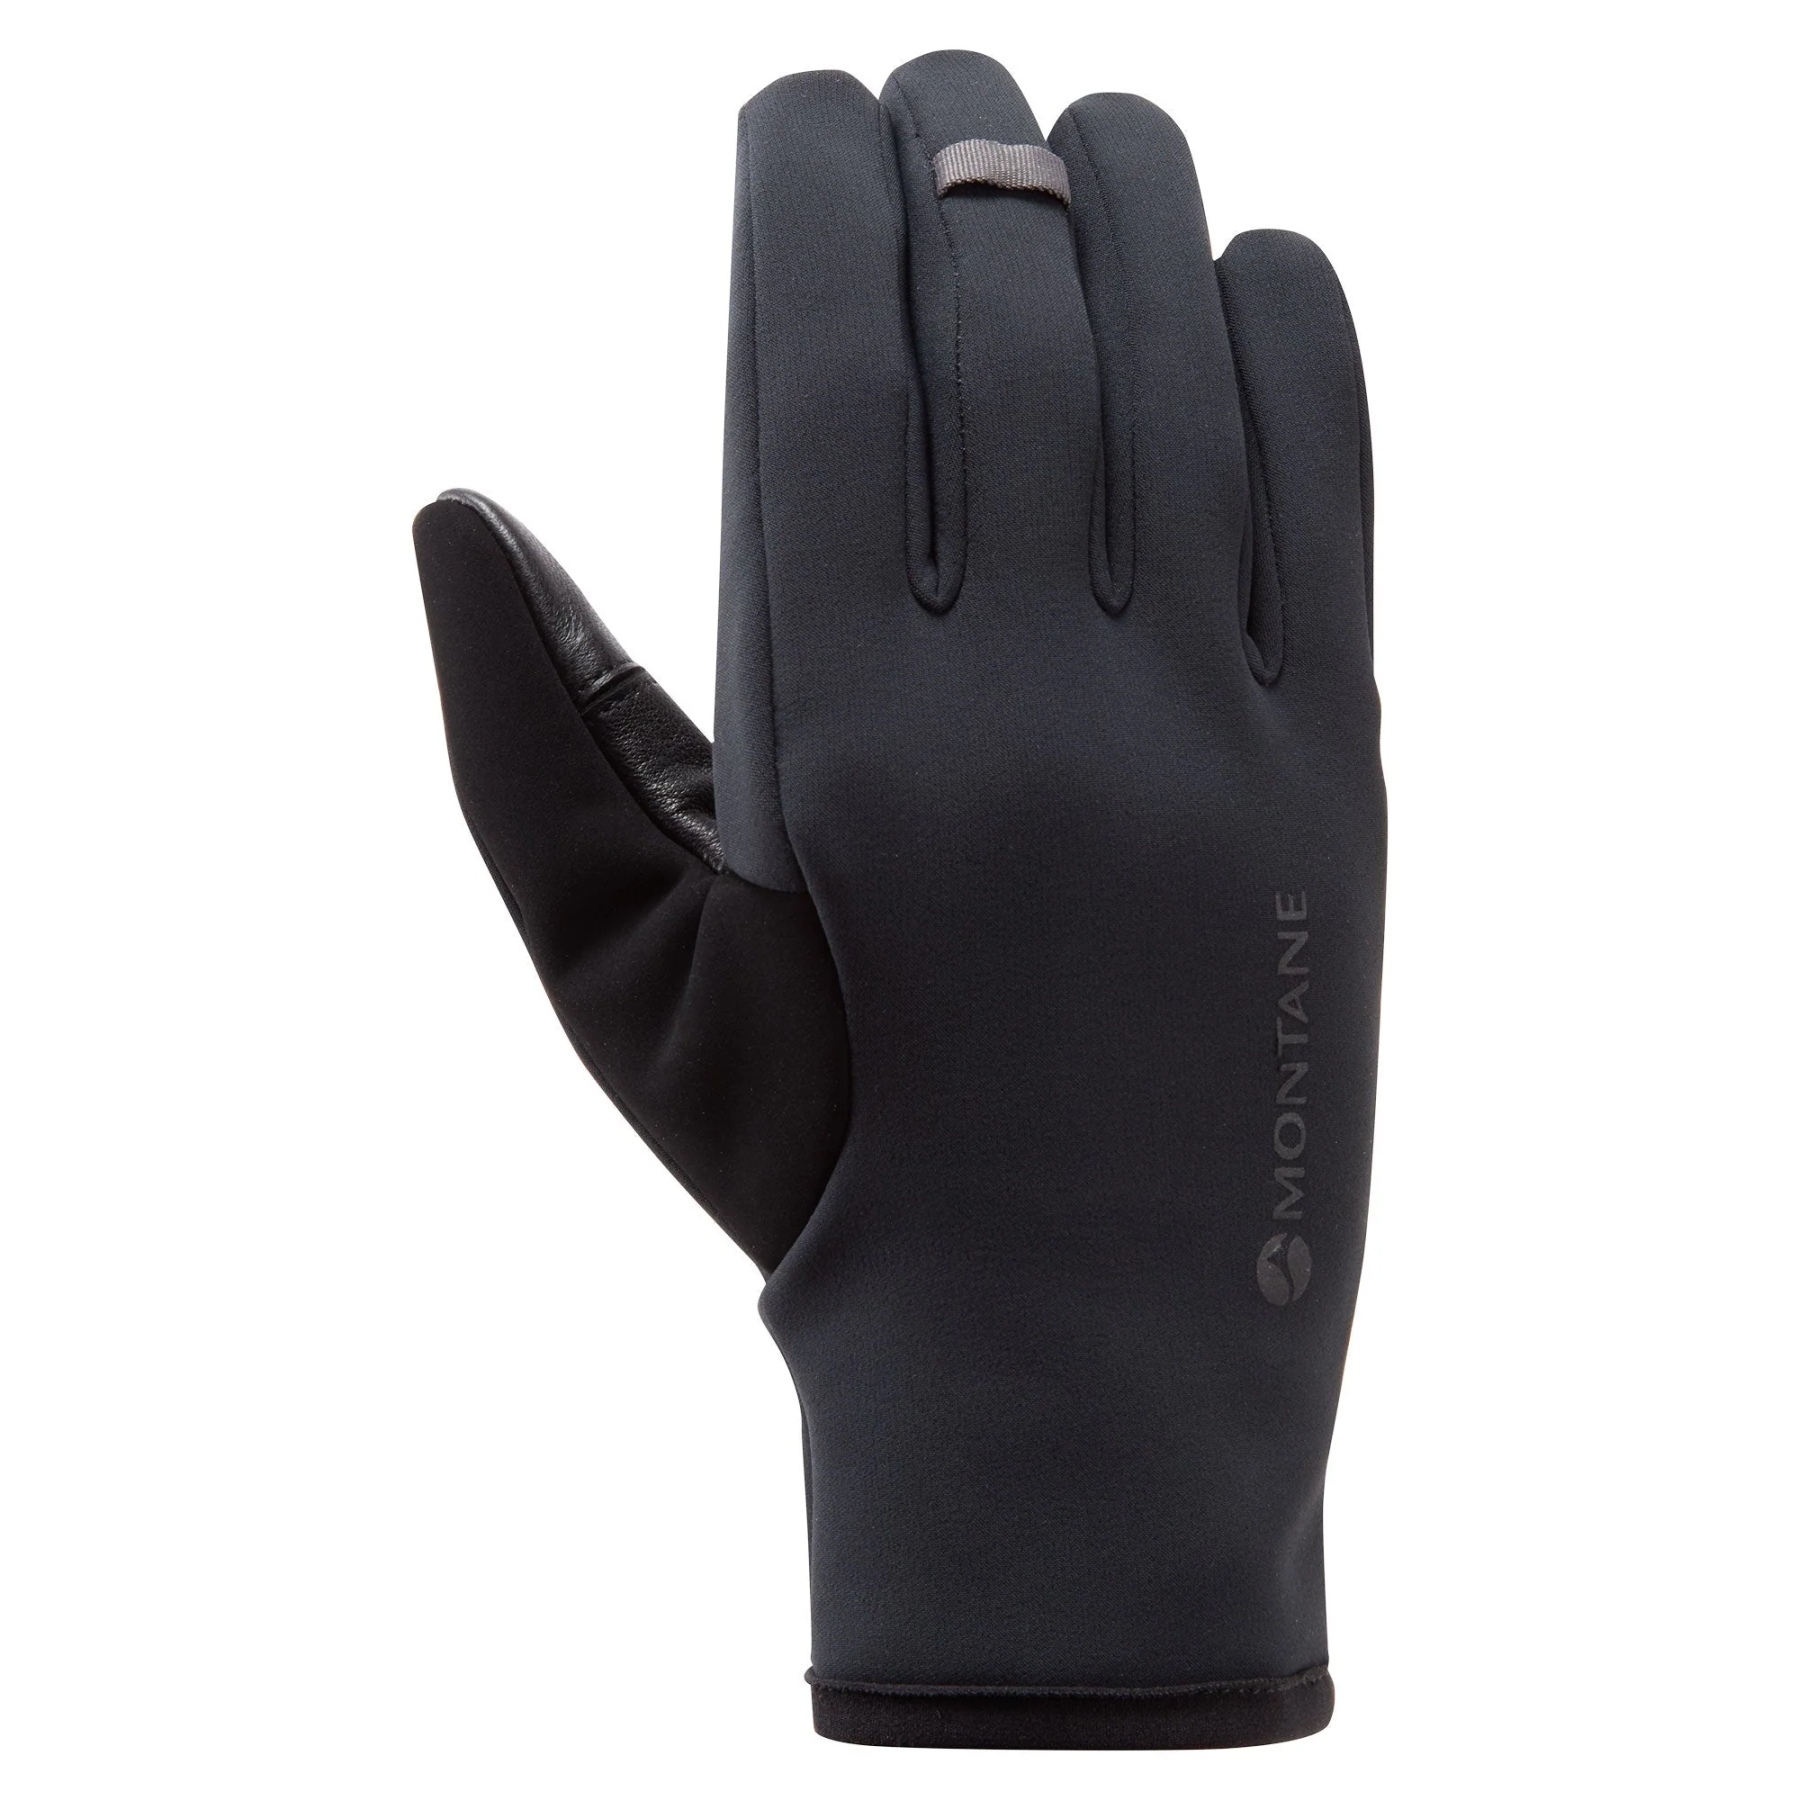 Produktbild von Montane Windjammer Lite Damen Winddichte Handschuhe - schwarz